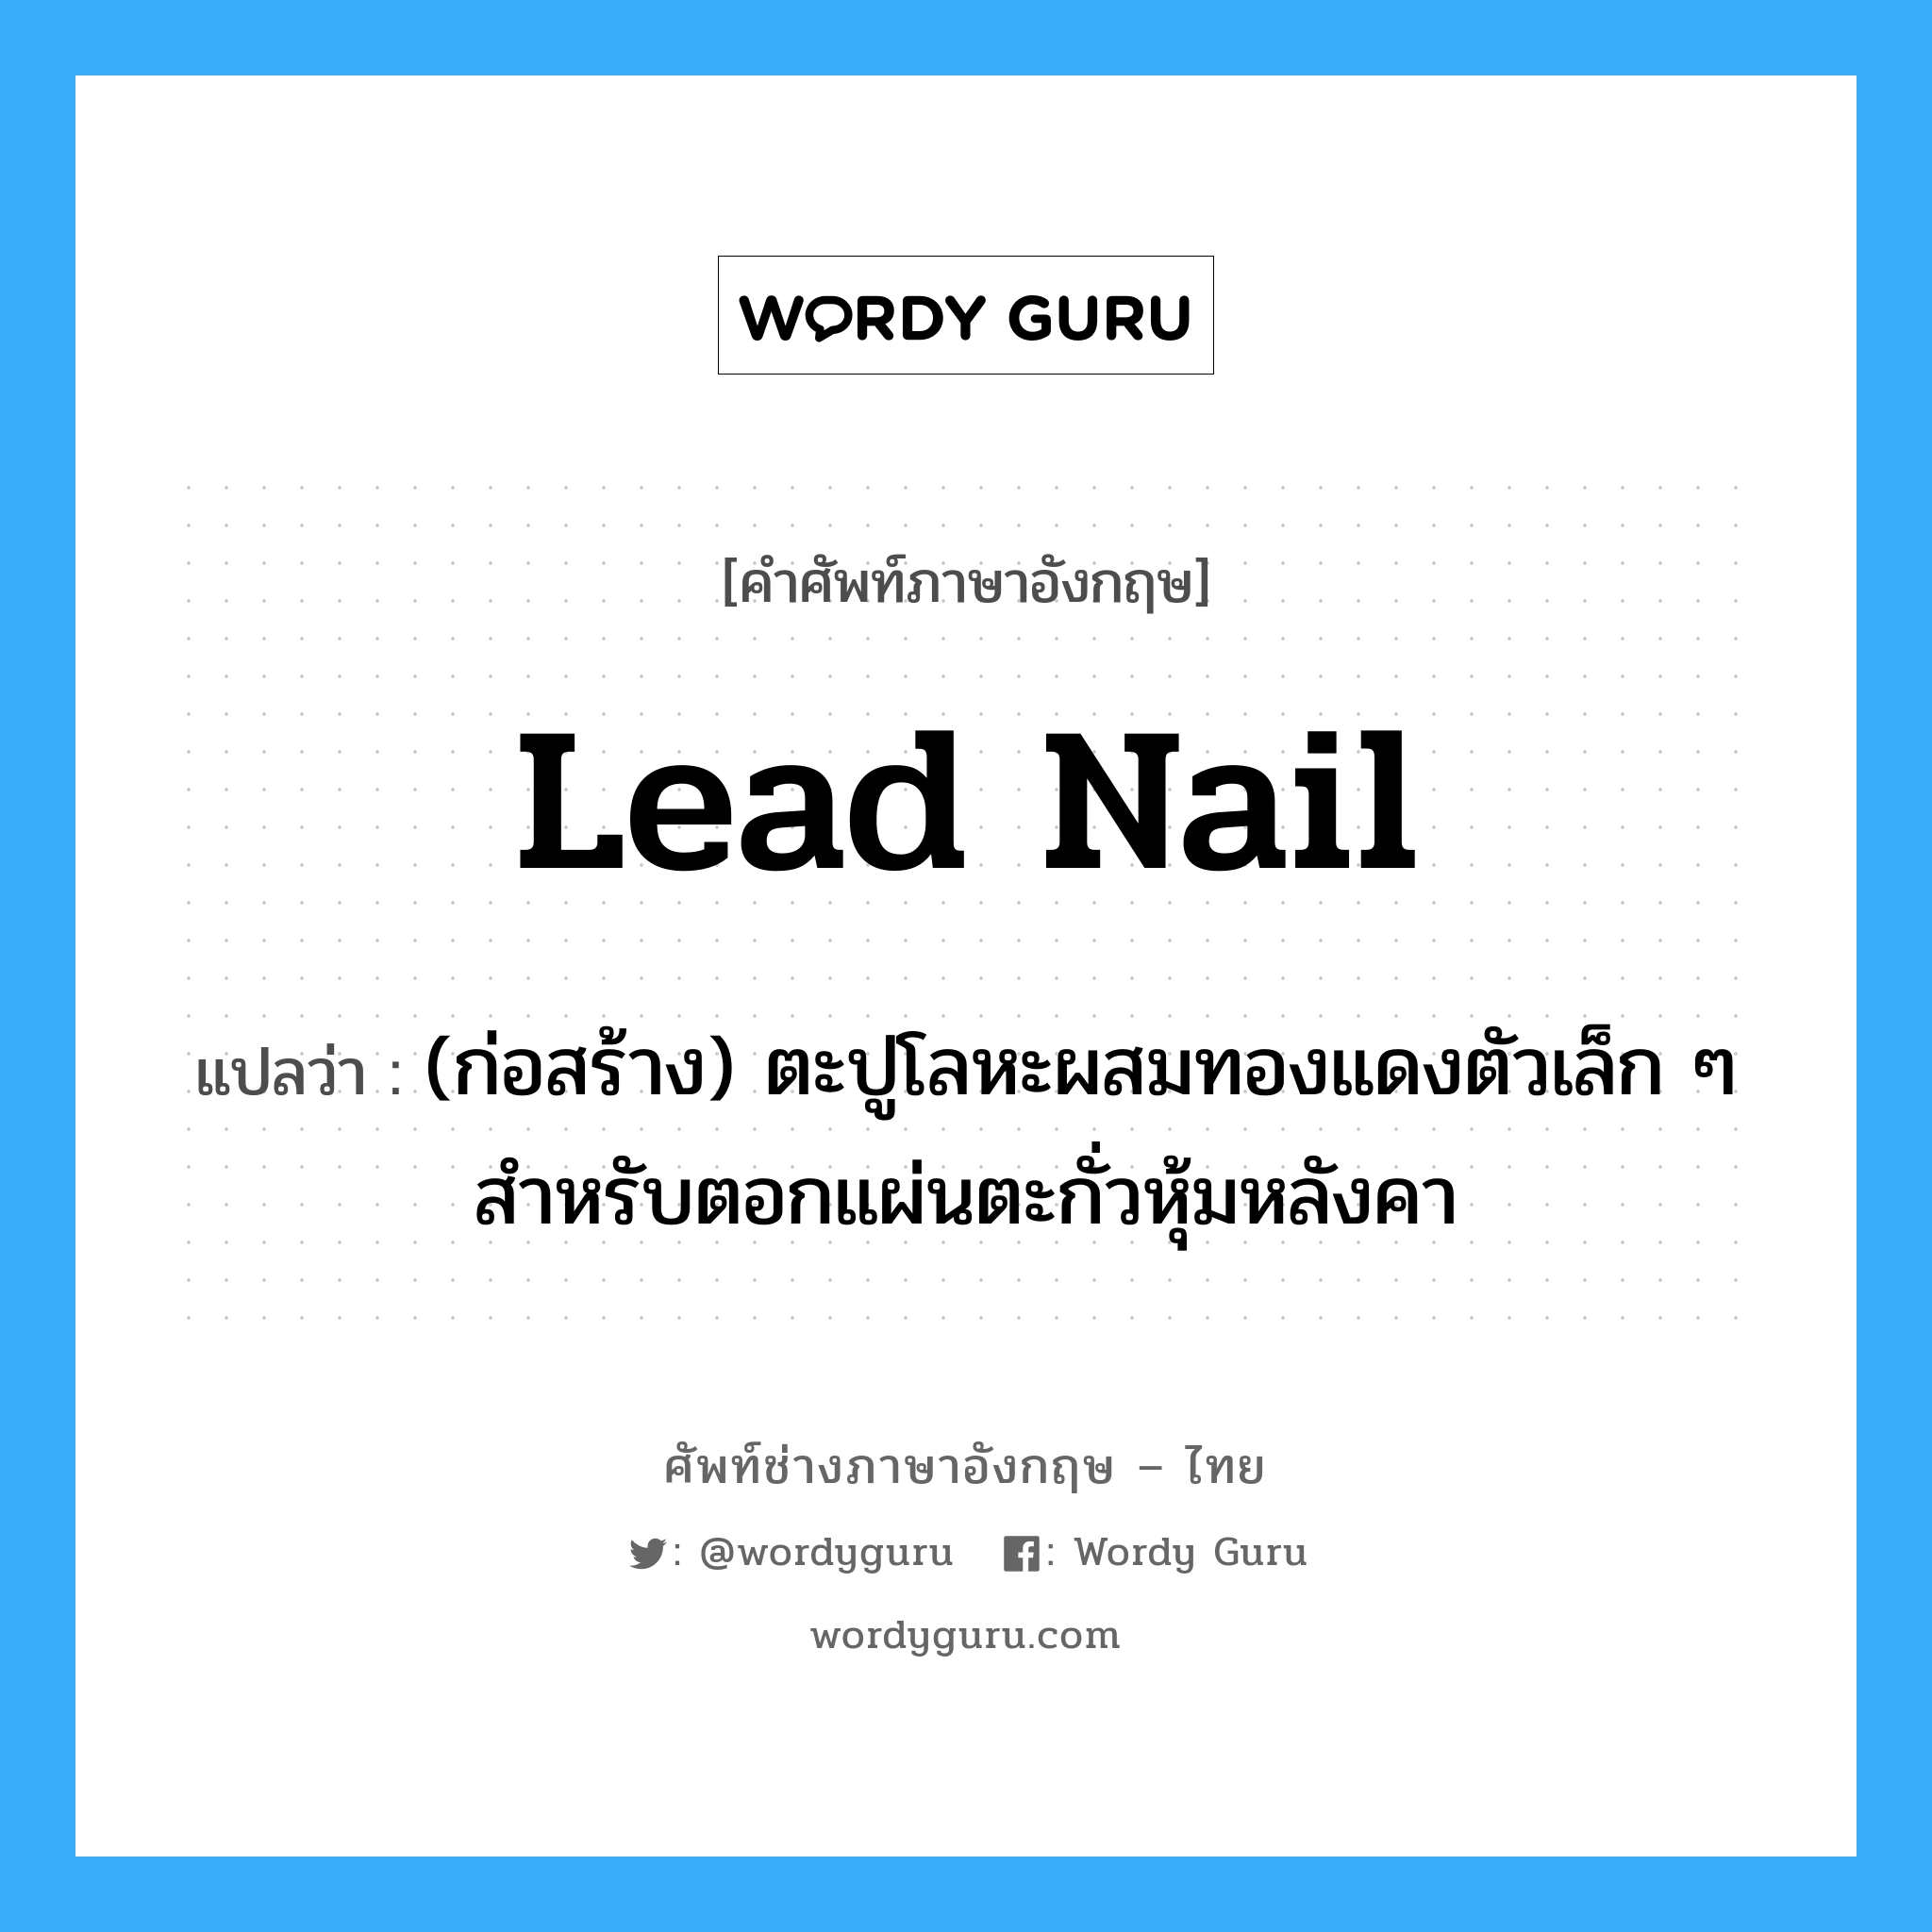 lead nail แปลว่า?, คำศัพท์ช่างภาษาอังกฤษ - ไทย lead nail คำศัพท์ภาษาอังกฤษ lead nail แปลว่า (ก่อสร้าง) ตะปูโลหะผสมทองแดงตัวเล็ก ๆ สำหรับตอกแผ่นตะกั่วหุ้มหลังคา